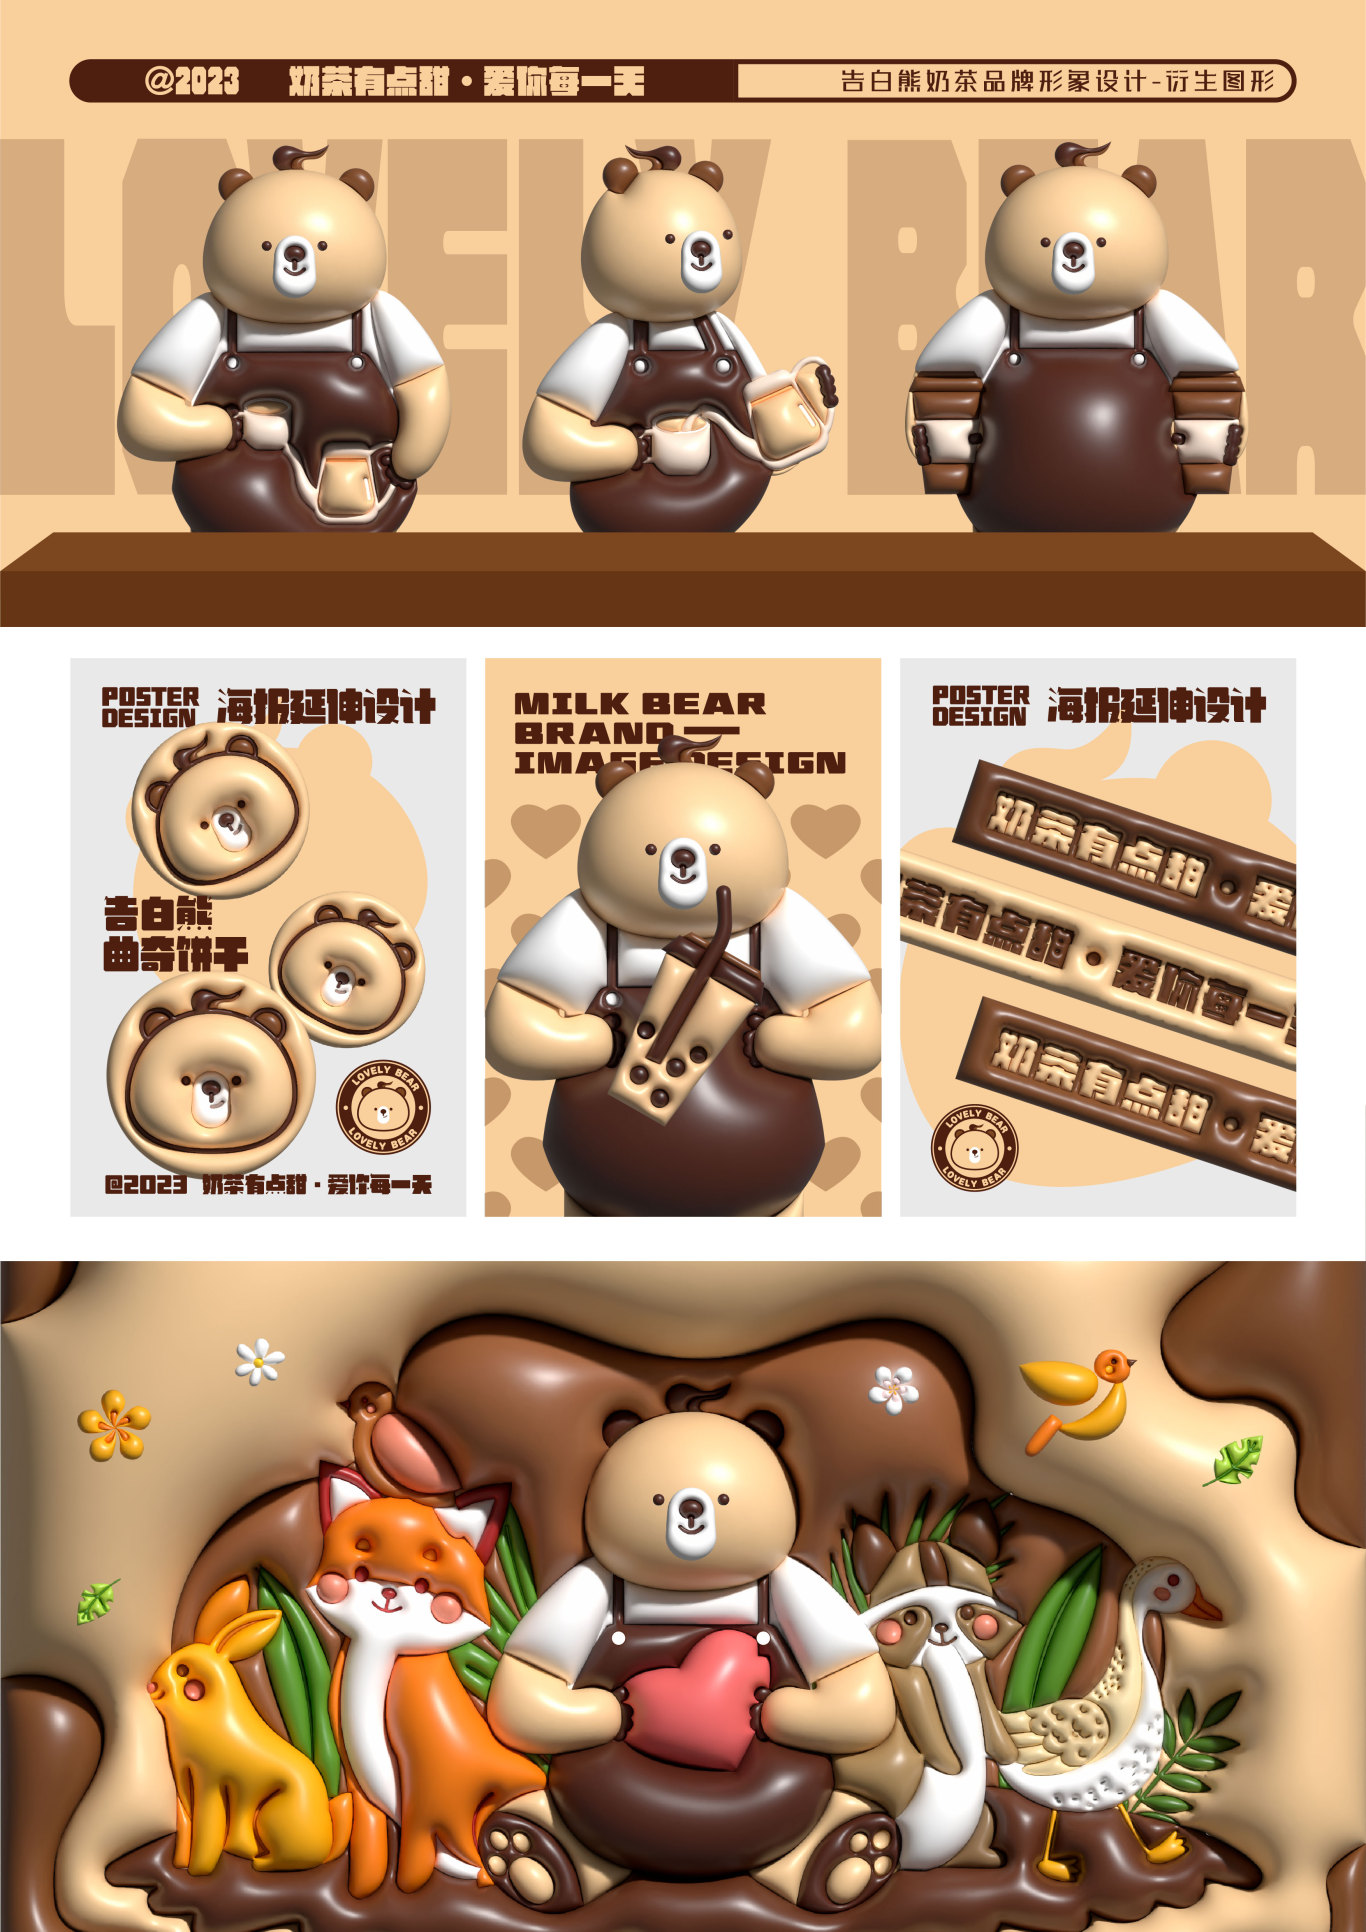 《告白熊》奶茶店品牌设计及吉祥物设计图2